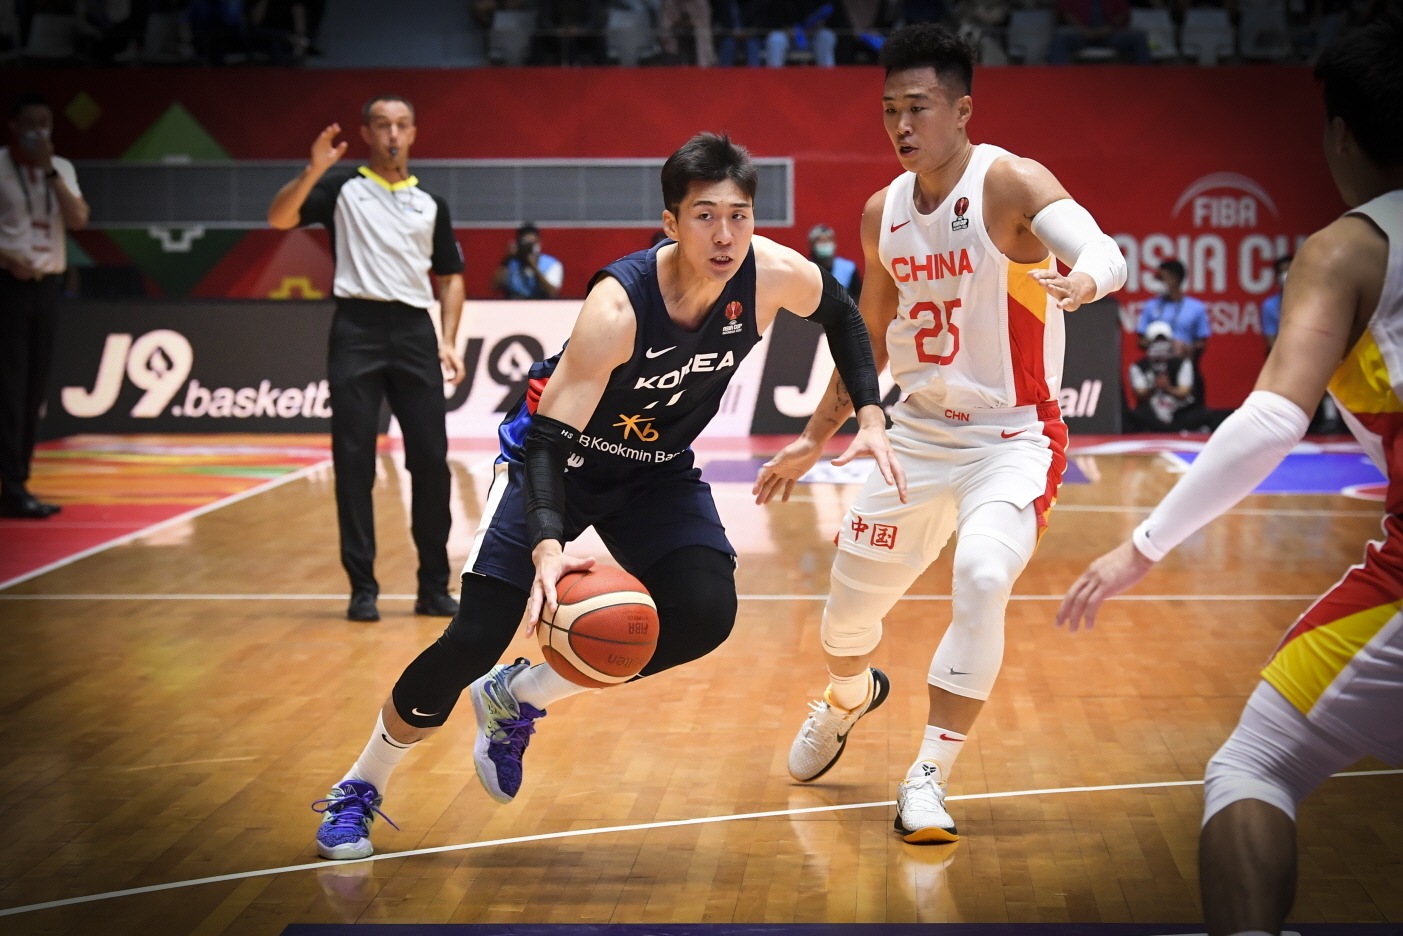 양홍석이 지난해 7월 12일 인도네시아 자카르타에서 열린 국제농구연맹(FIBA) 아시아컵 중국과의 경기에서 드리블하고 있다. 대한농구협회 제공